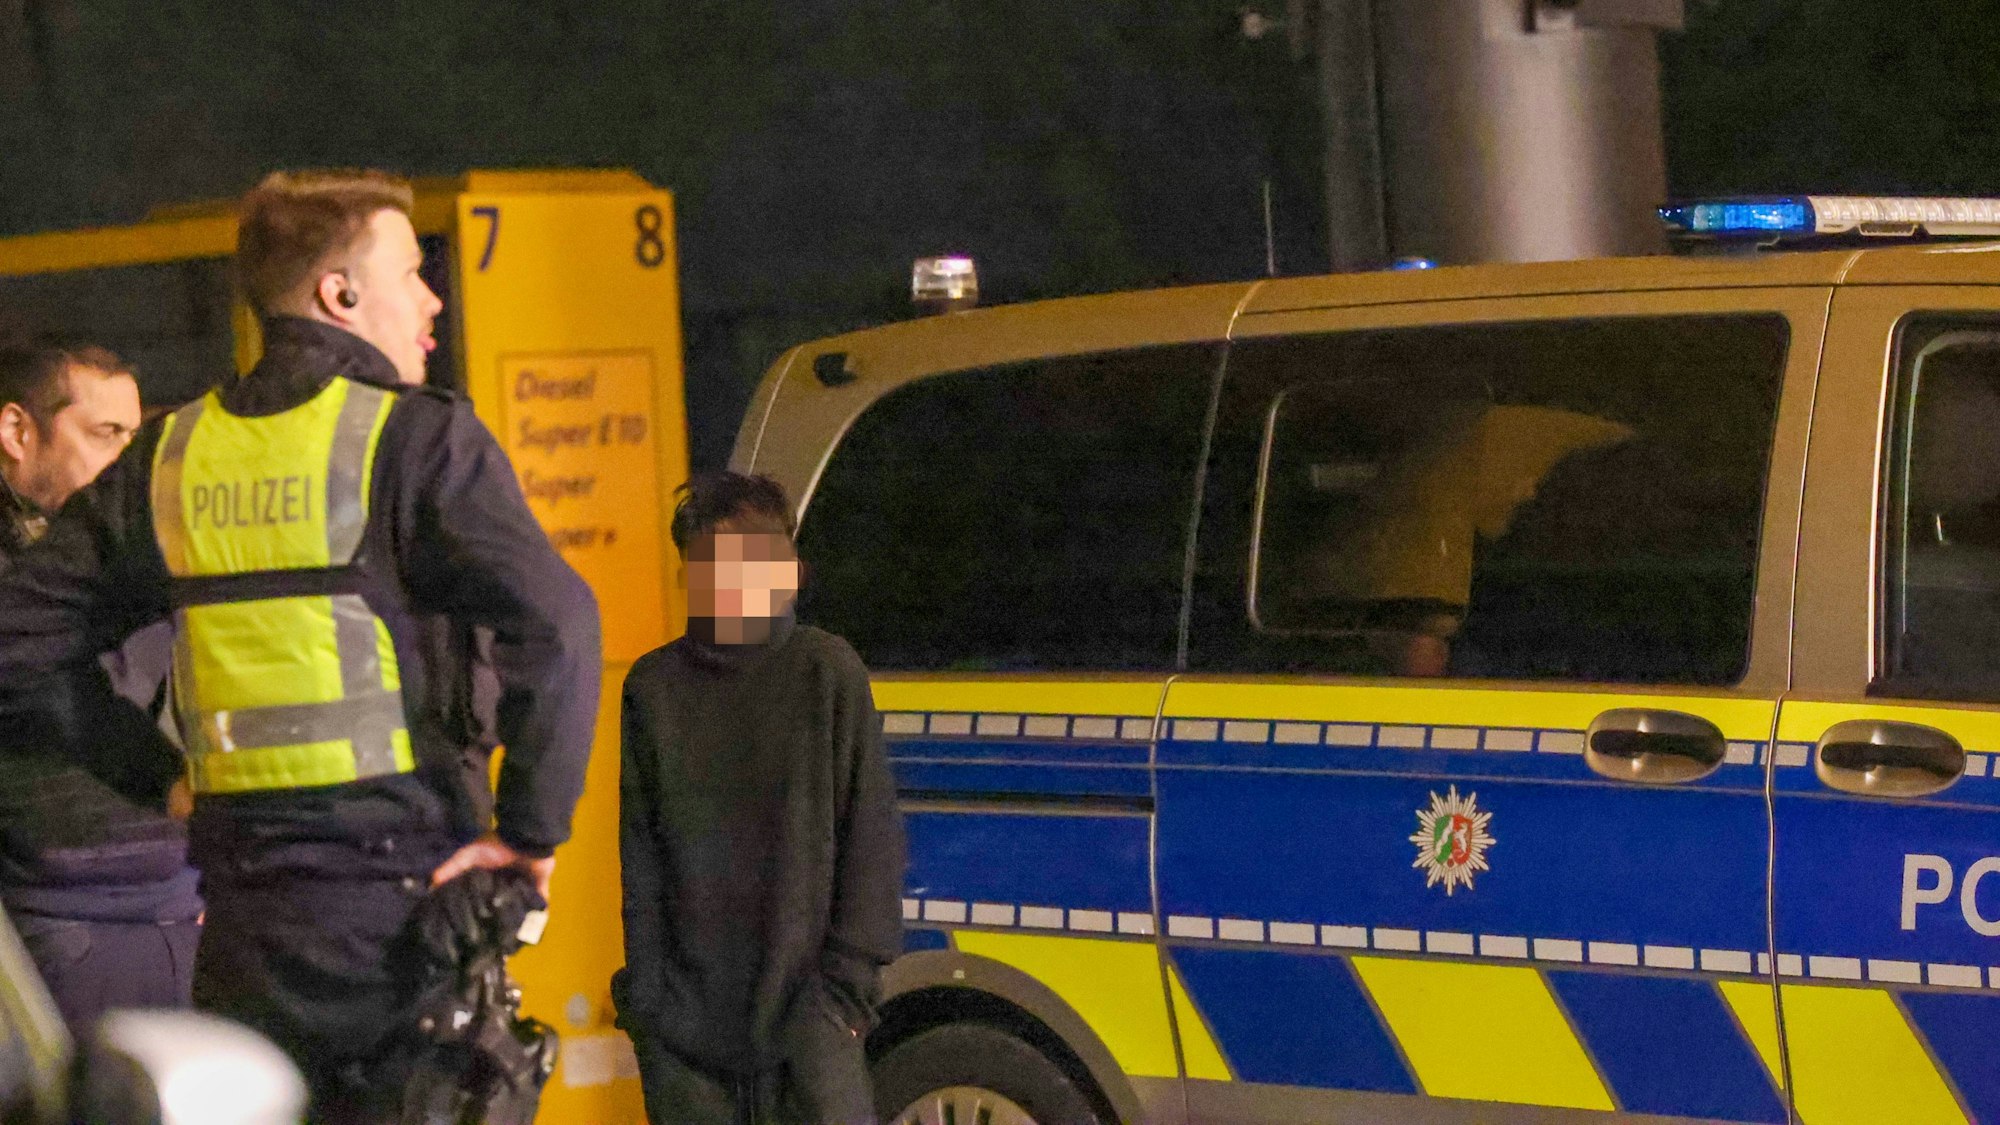 Ein Kind, das Gesicht ist verpixelt, steht neben einem Polizisten und einem Polizeiwagen.